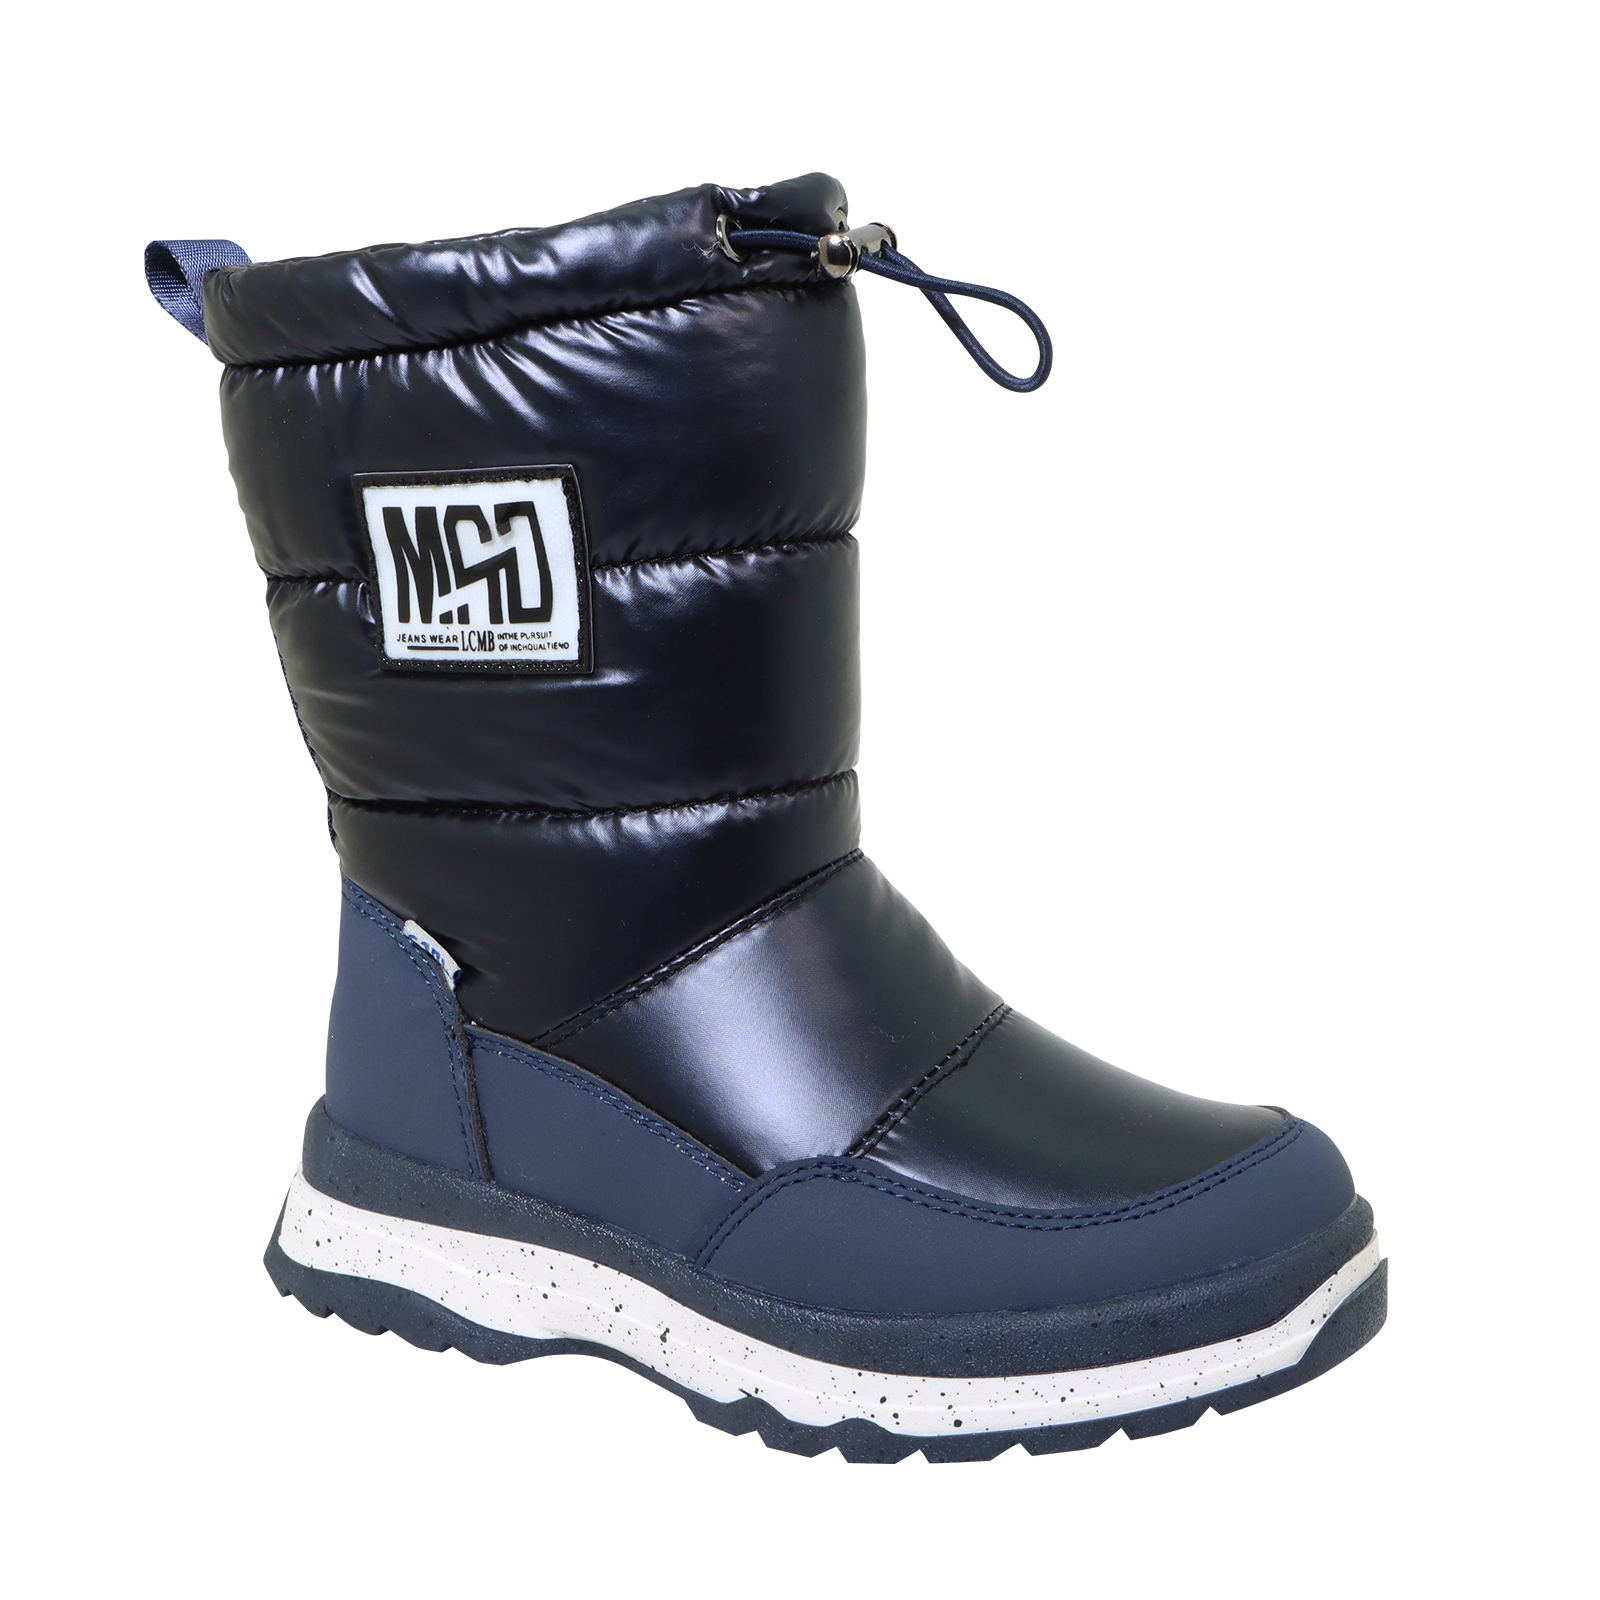 New design waterproof Boots for children